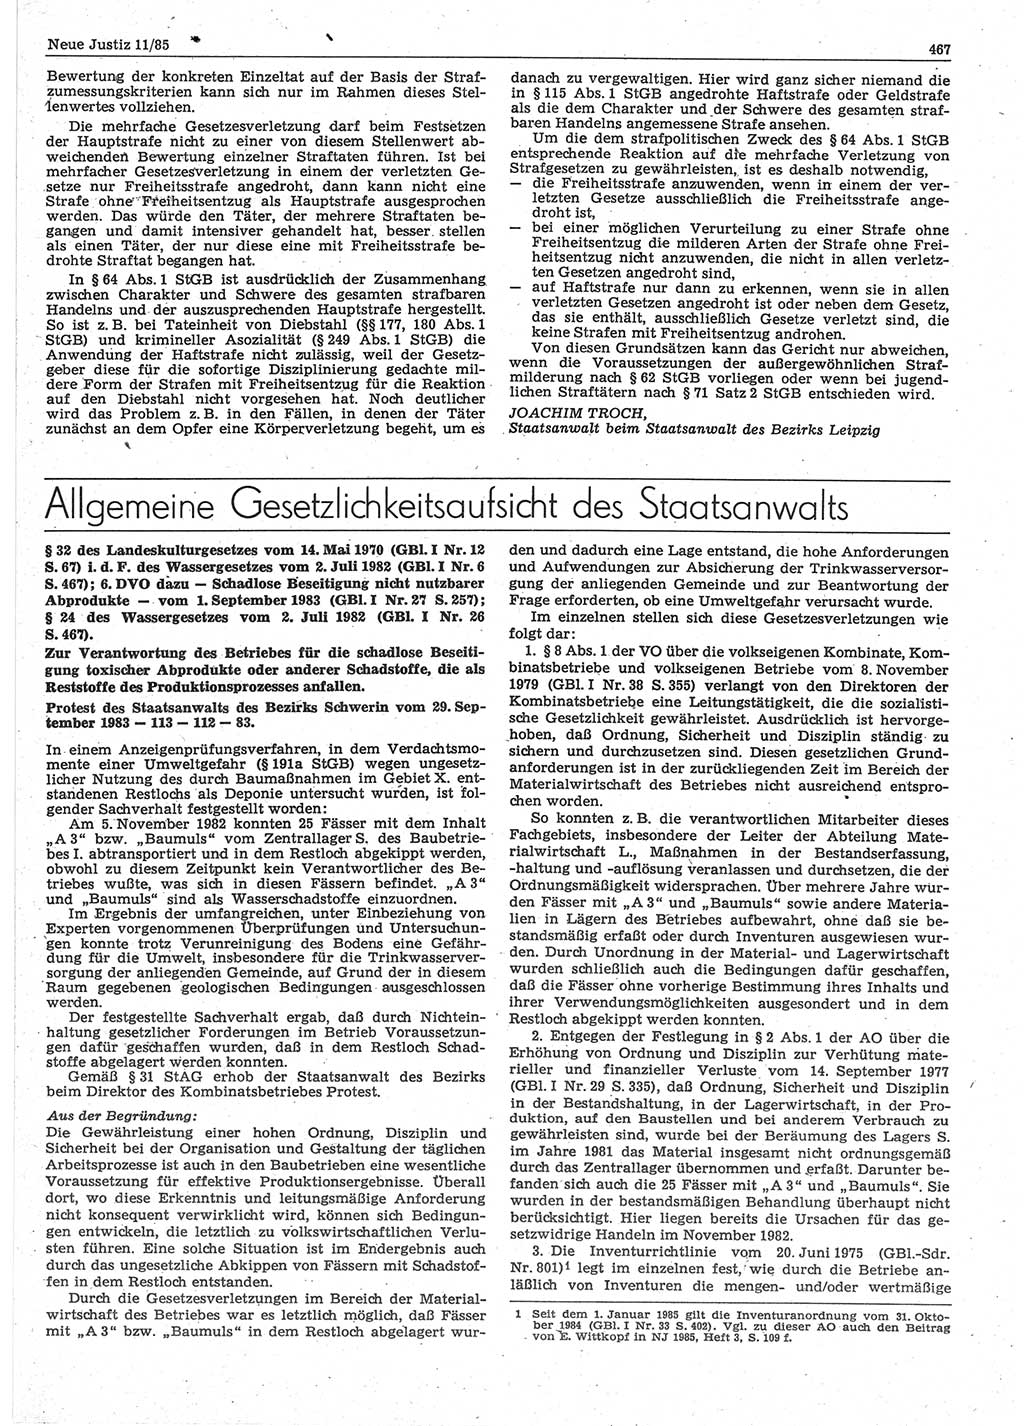 Neue Justiz (NJ), Zeitschrift für sozialistisches Recht und Gesetzlichkeit [Deutsche Demokratische Republik (DDR)], 39. Jahrgang 1985, Seite 467 (NJ DDR 1985, S. 467)